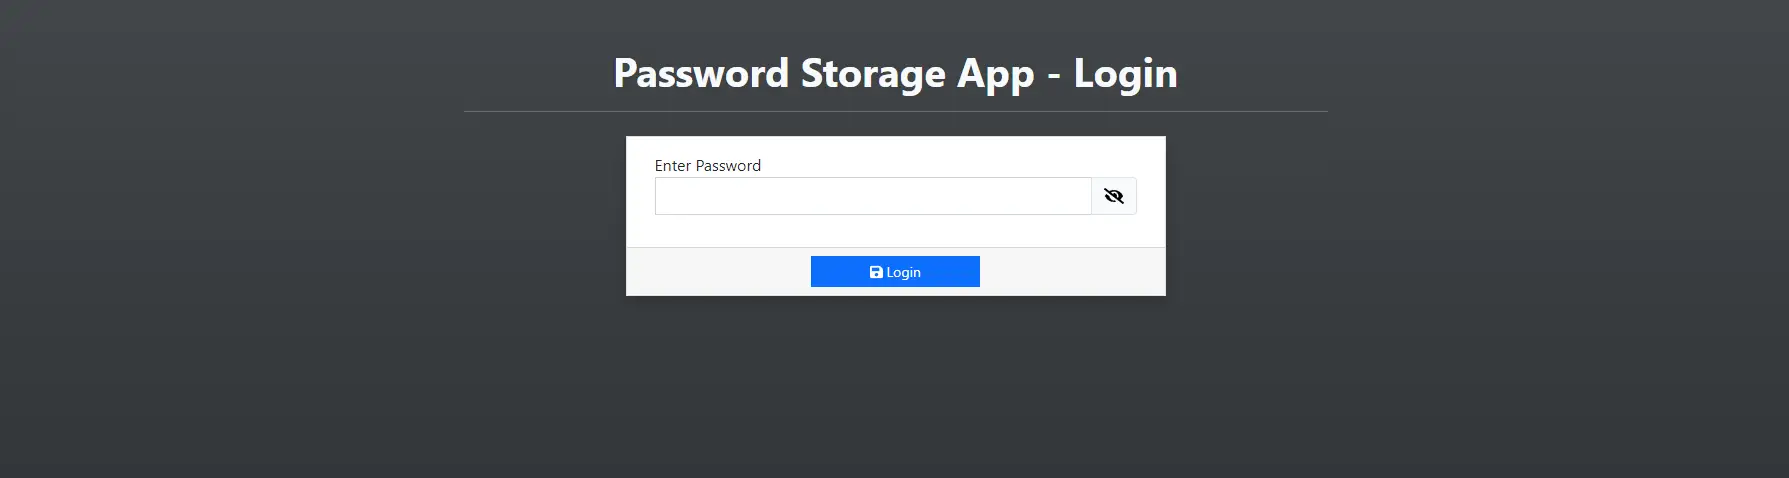 Password Storage App